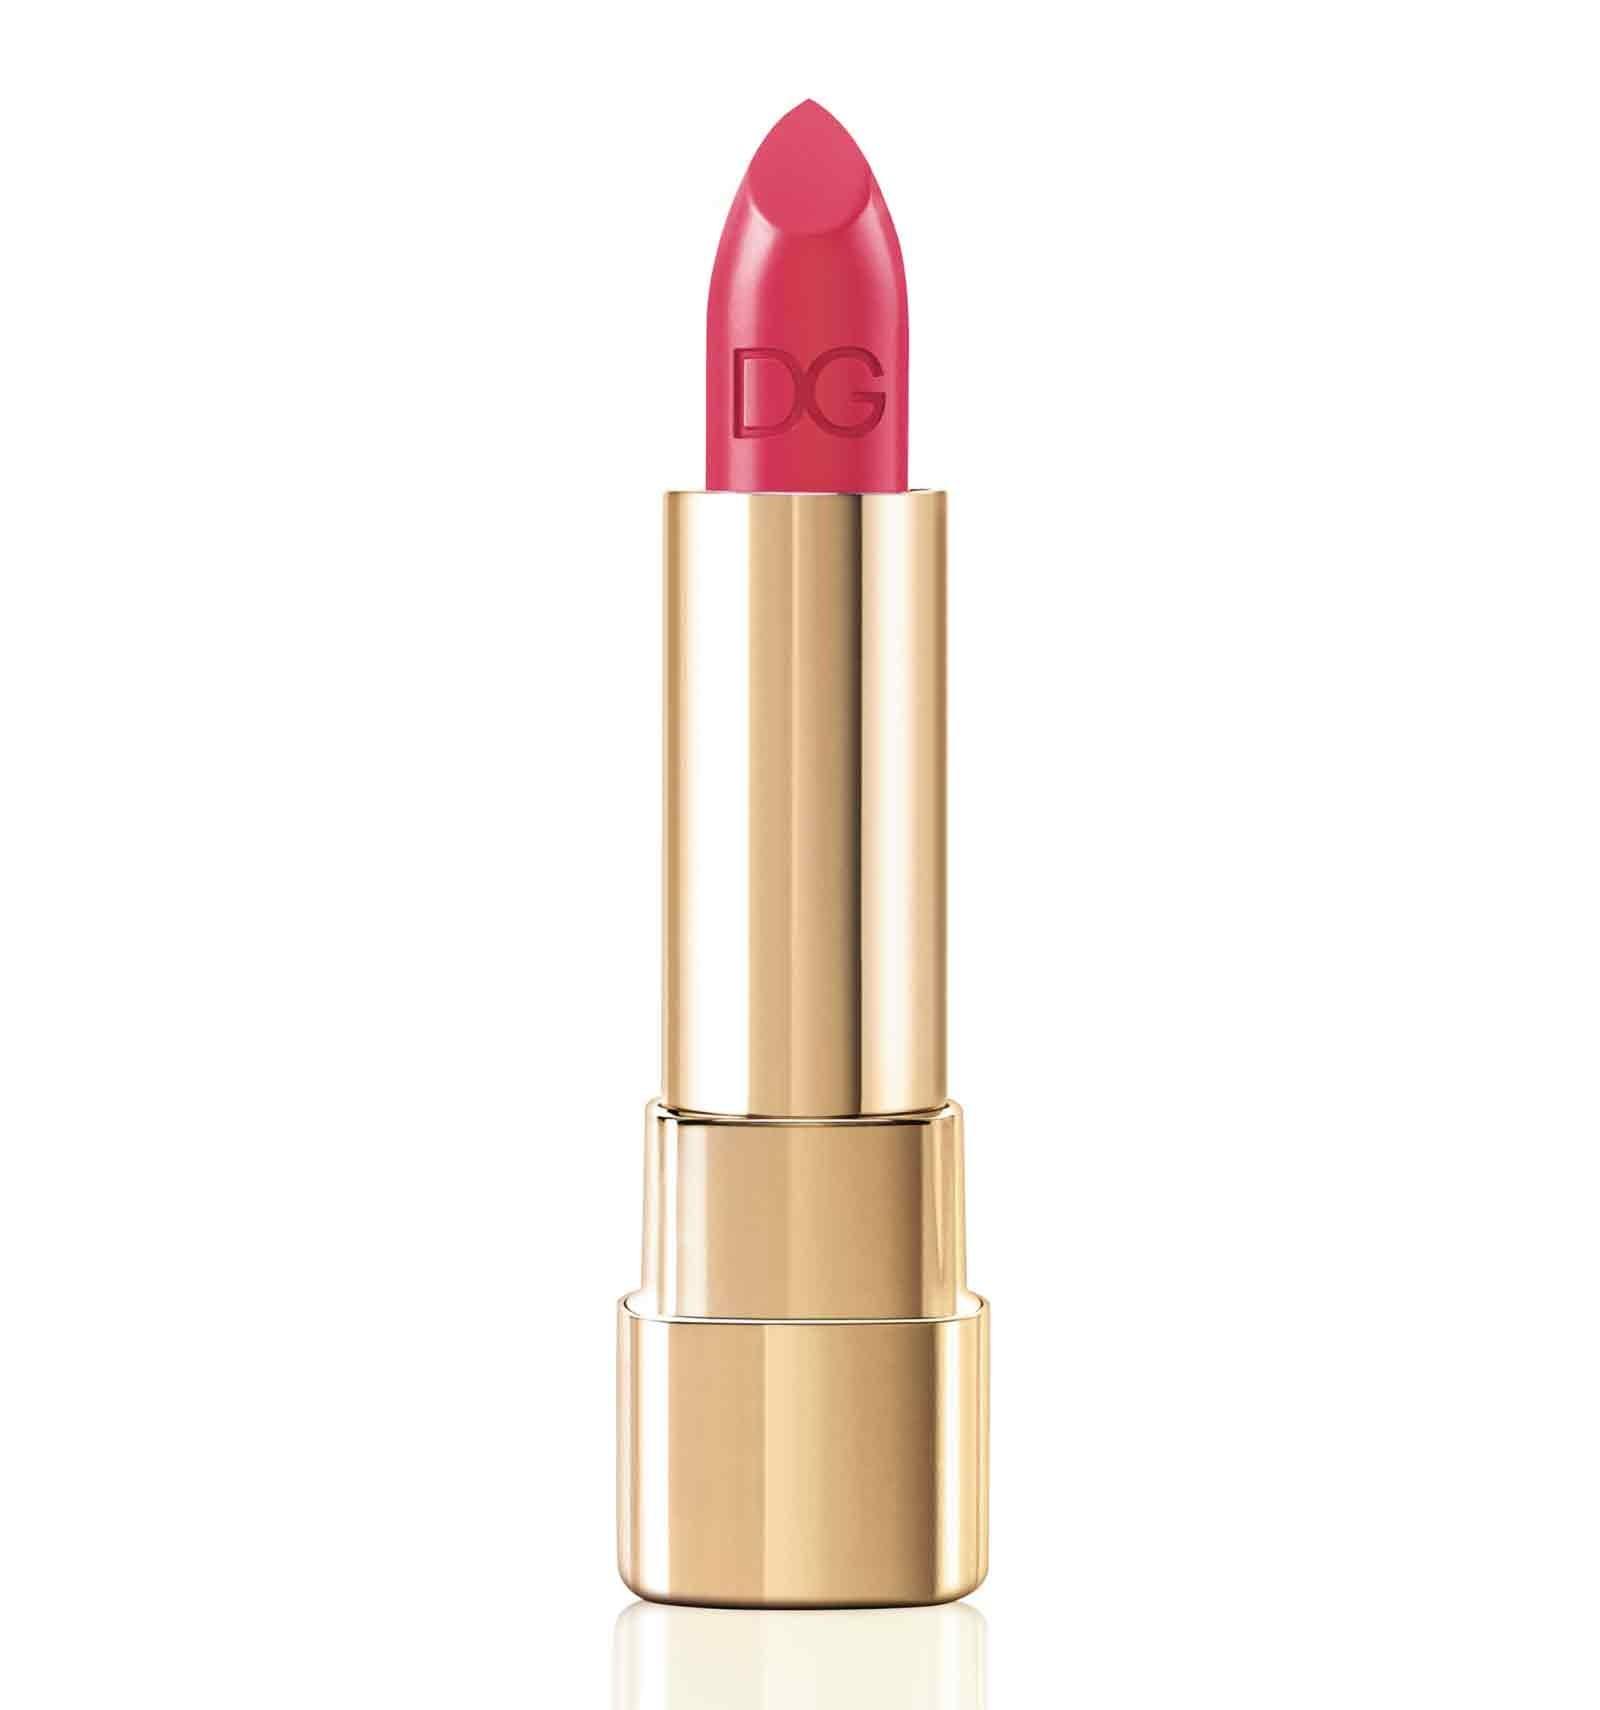 Dolce&Gabbana Shine Lipstick